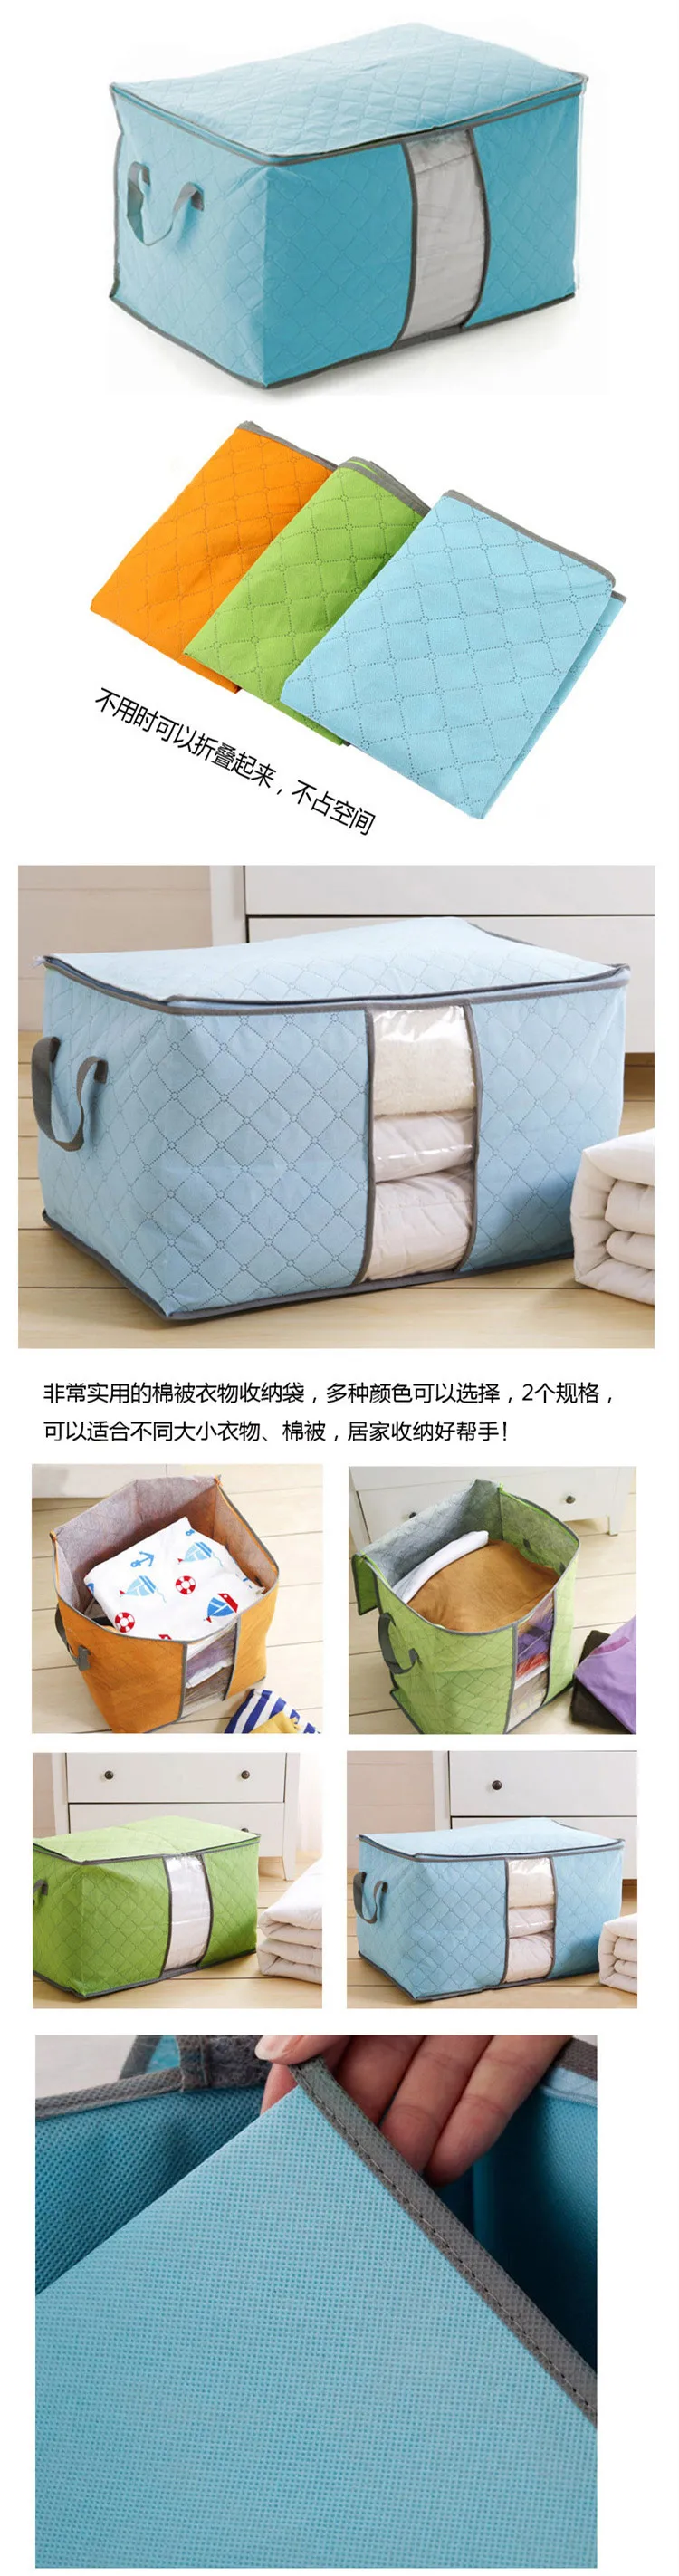 Коробка для хранения одежды влагостойкий мешок для хлопка Стёганое одеяло Organizador чемоданчик и двигаться Главная Сумки ежедневные поставки принадлежности хранения